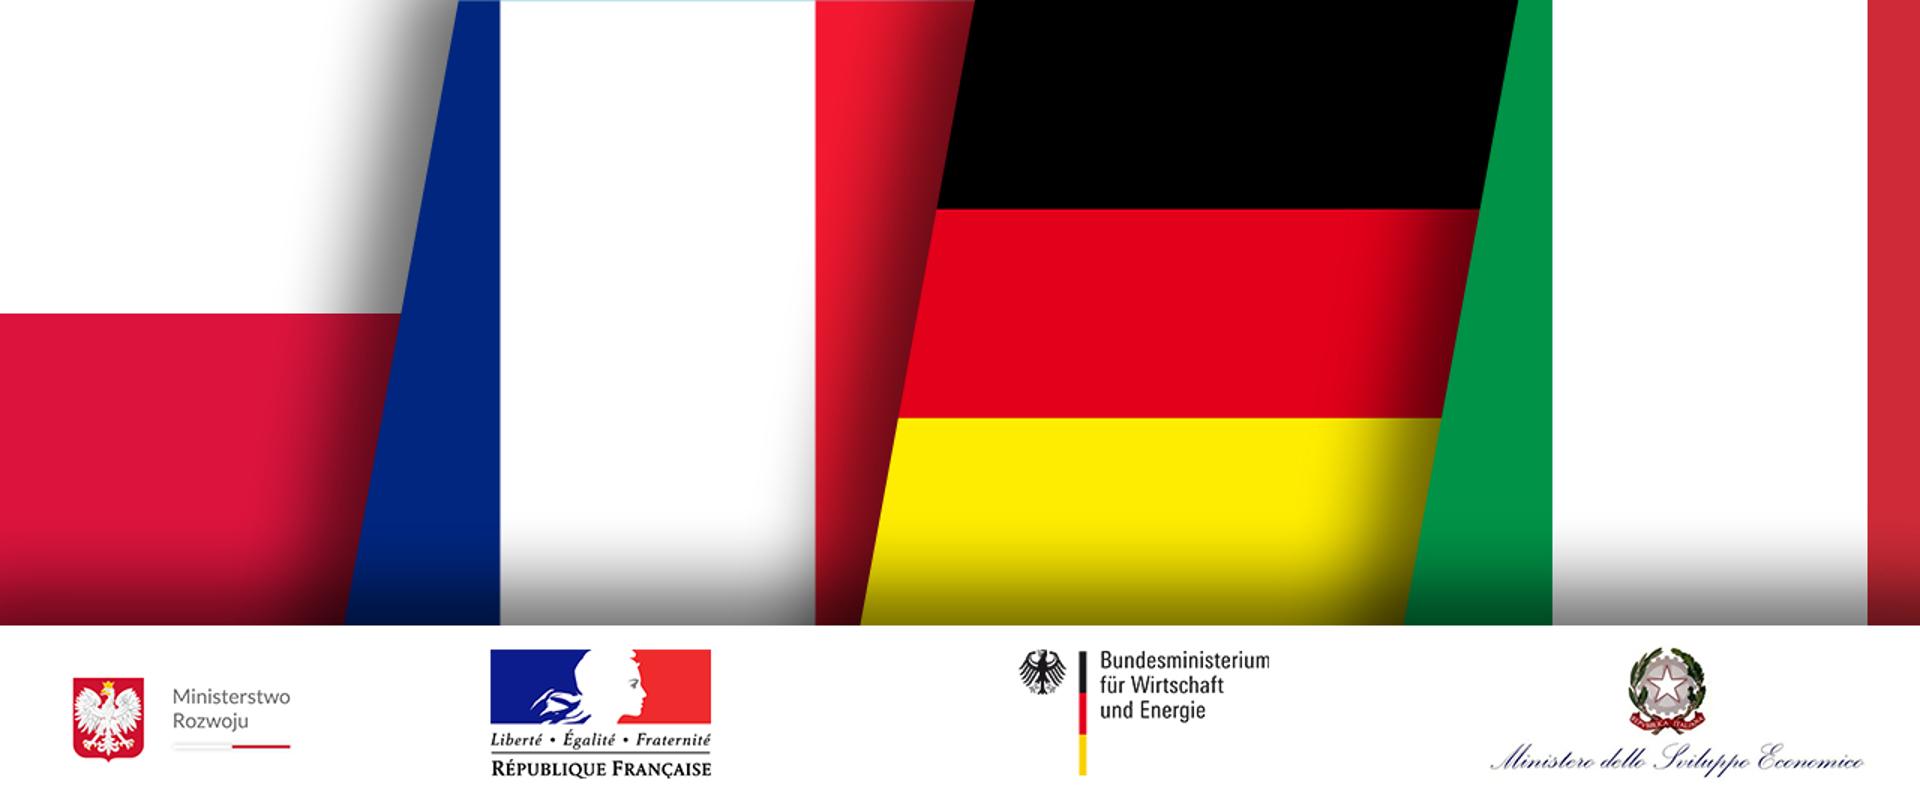 Grafika składa się z czterech flag: Polski, Francji, Niemiec i Włoch, umieszczonych obok siebie.